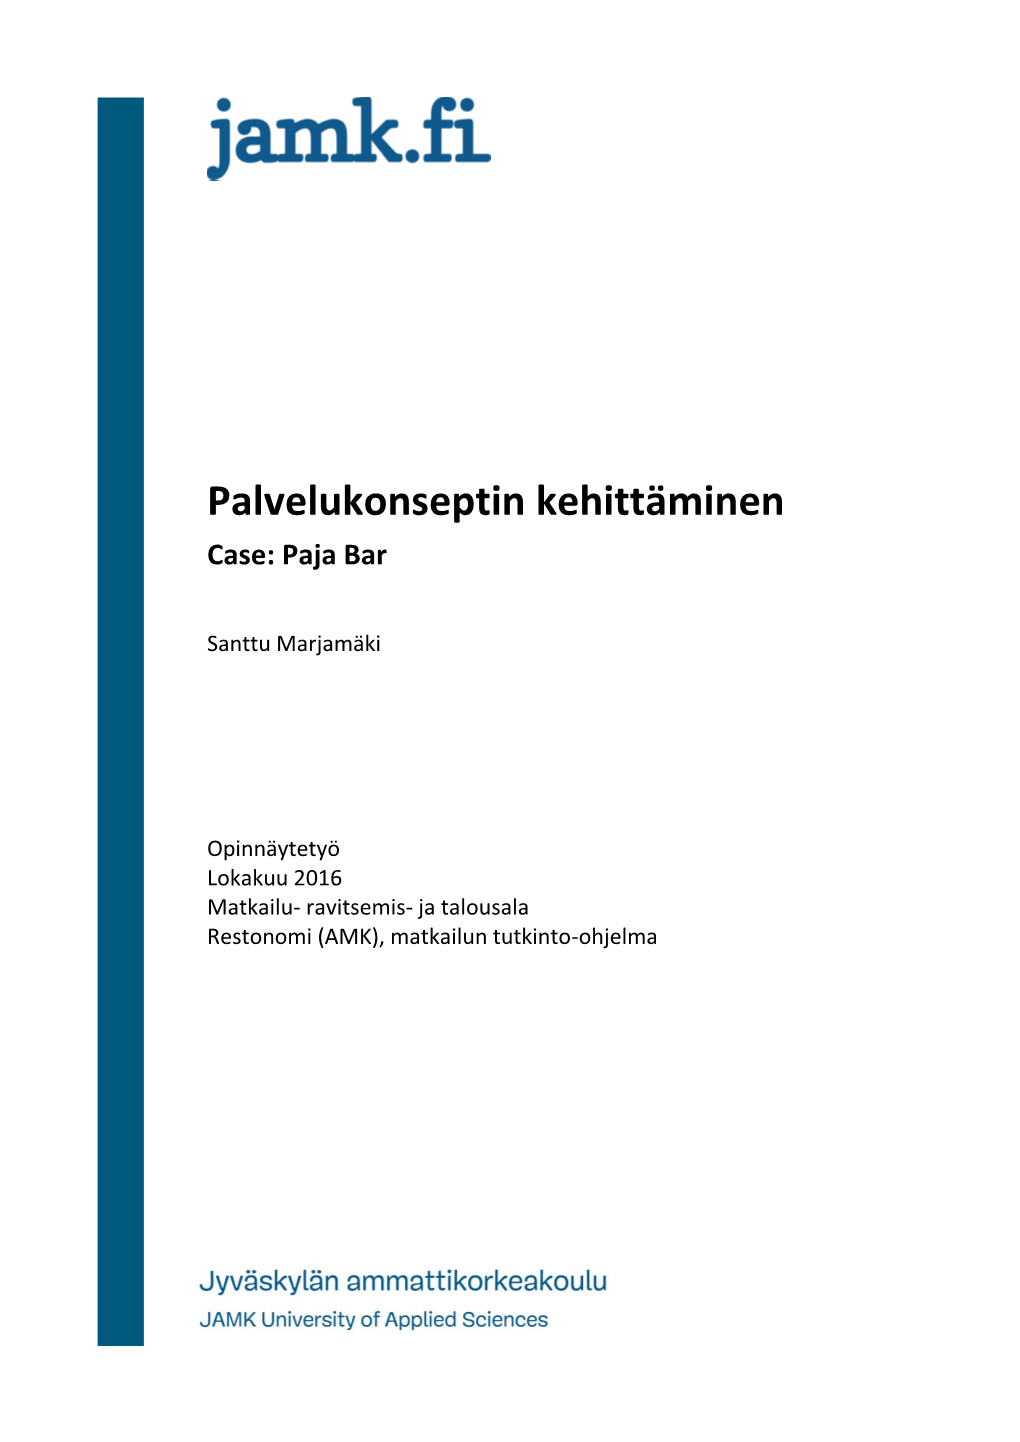 Palvelukonseptin Kehittäminen Case: Paja Bar